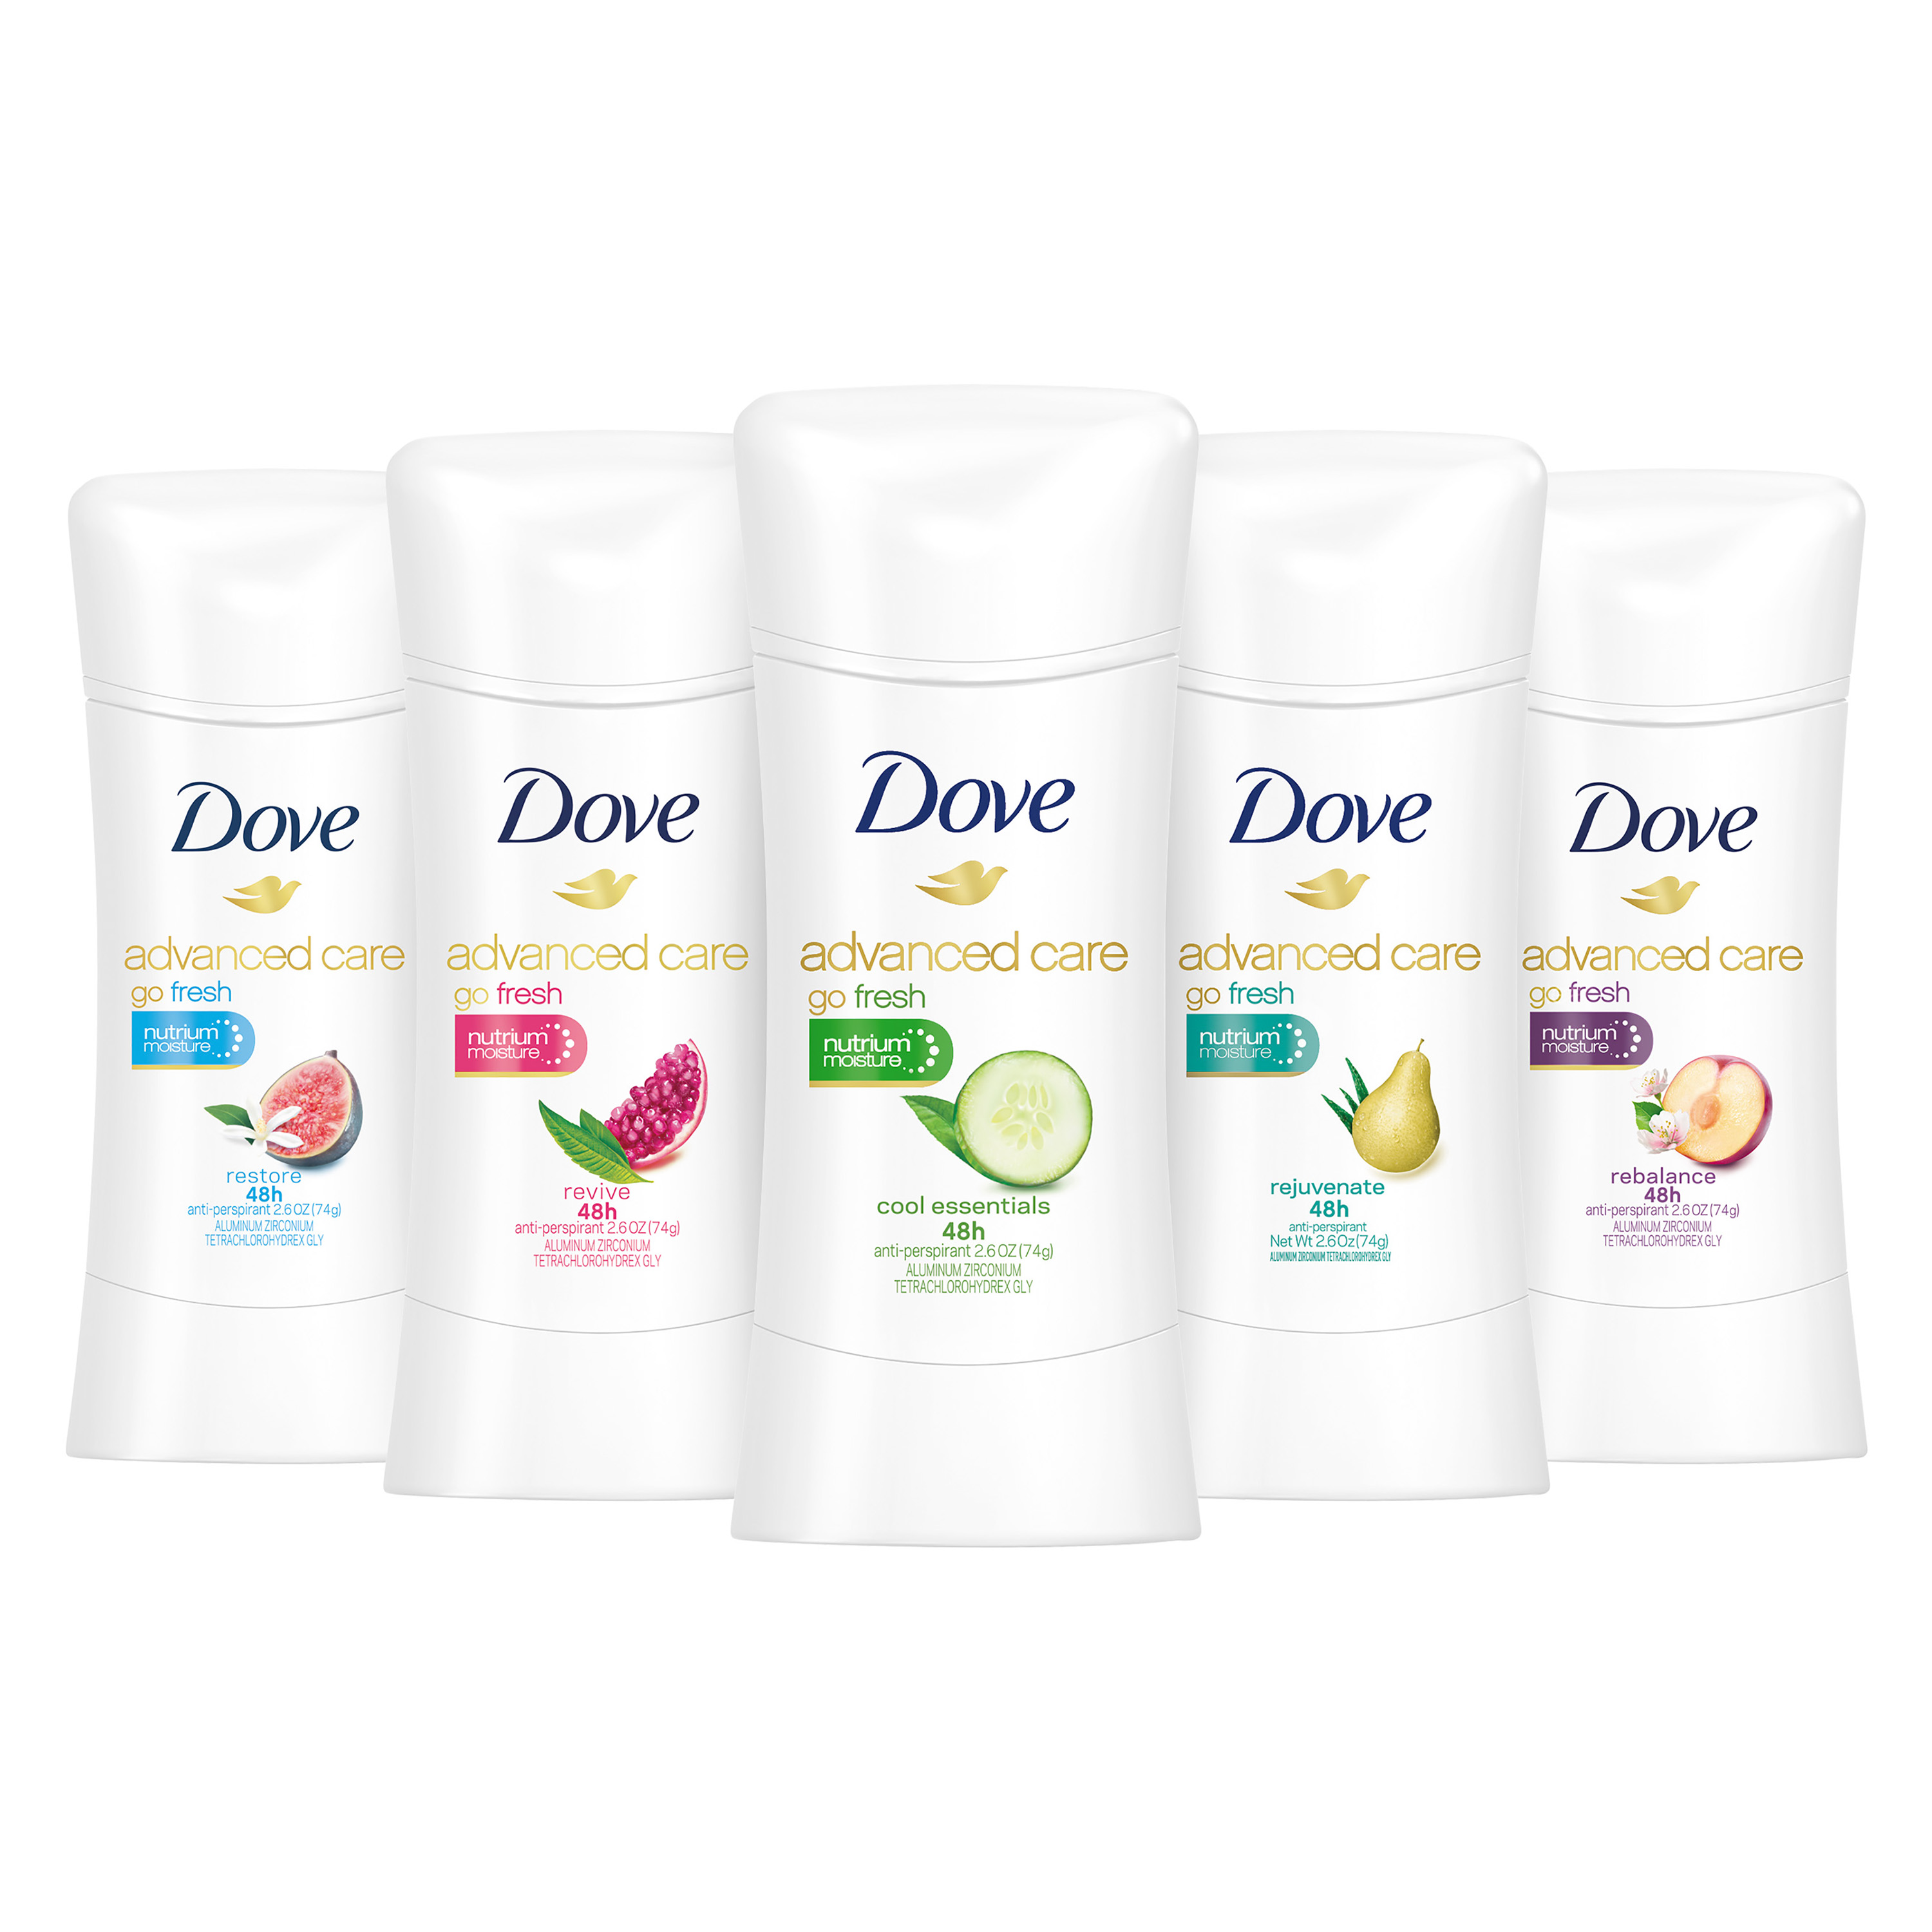 Dove Advanced Care deodorant 